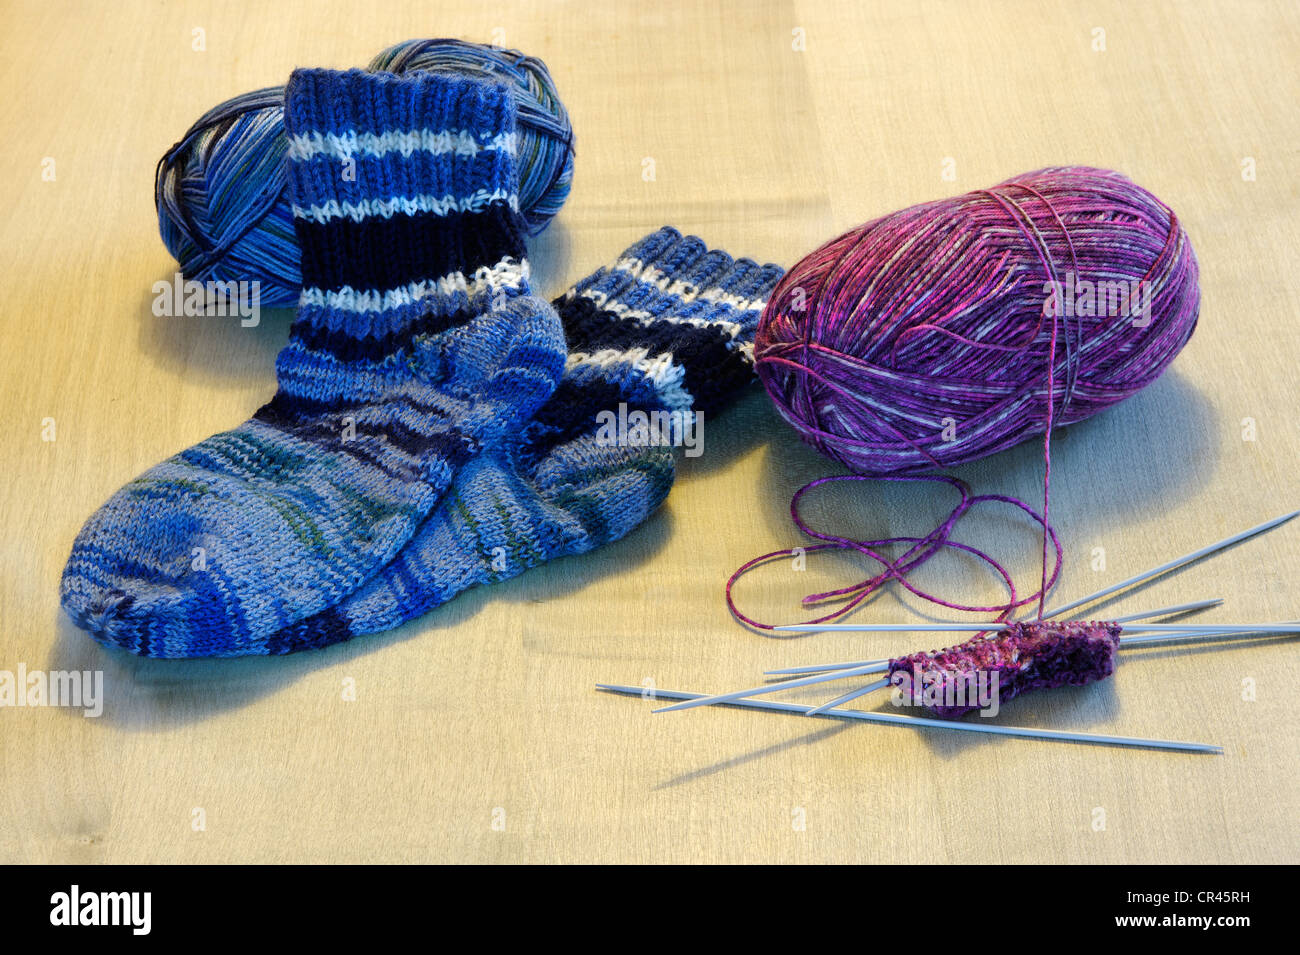 Le tricotage de chaussettes, de la laine, des aiguilles à tricoter Banque D'Images